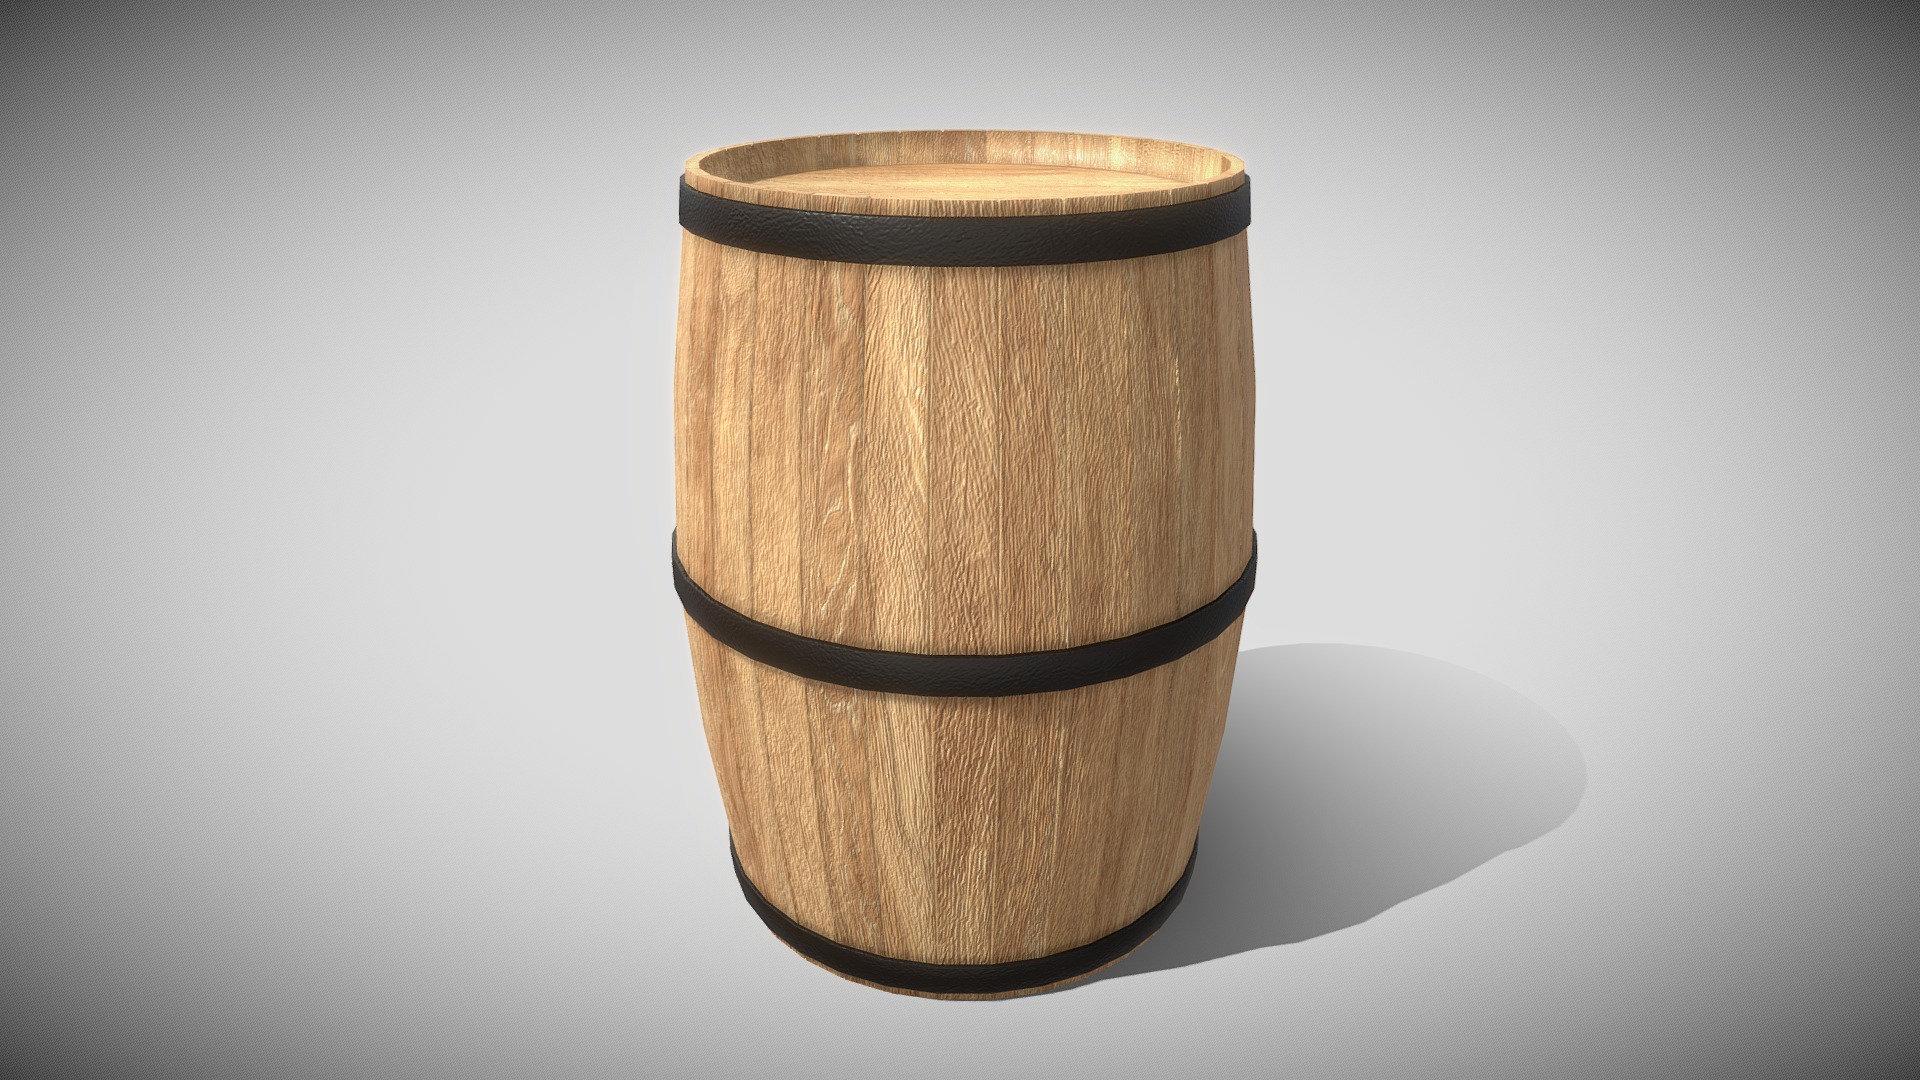 3D model Wooden Barrel (Blend File, OBJ, DAE) - This is a 3D model of the Wooden Barrel (Blend File, OBJ, DAE). The 3D model is about a wooden barrel on a white background.